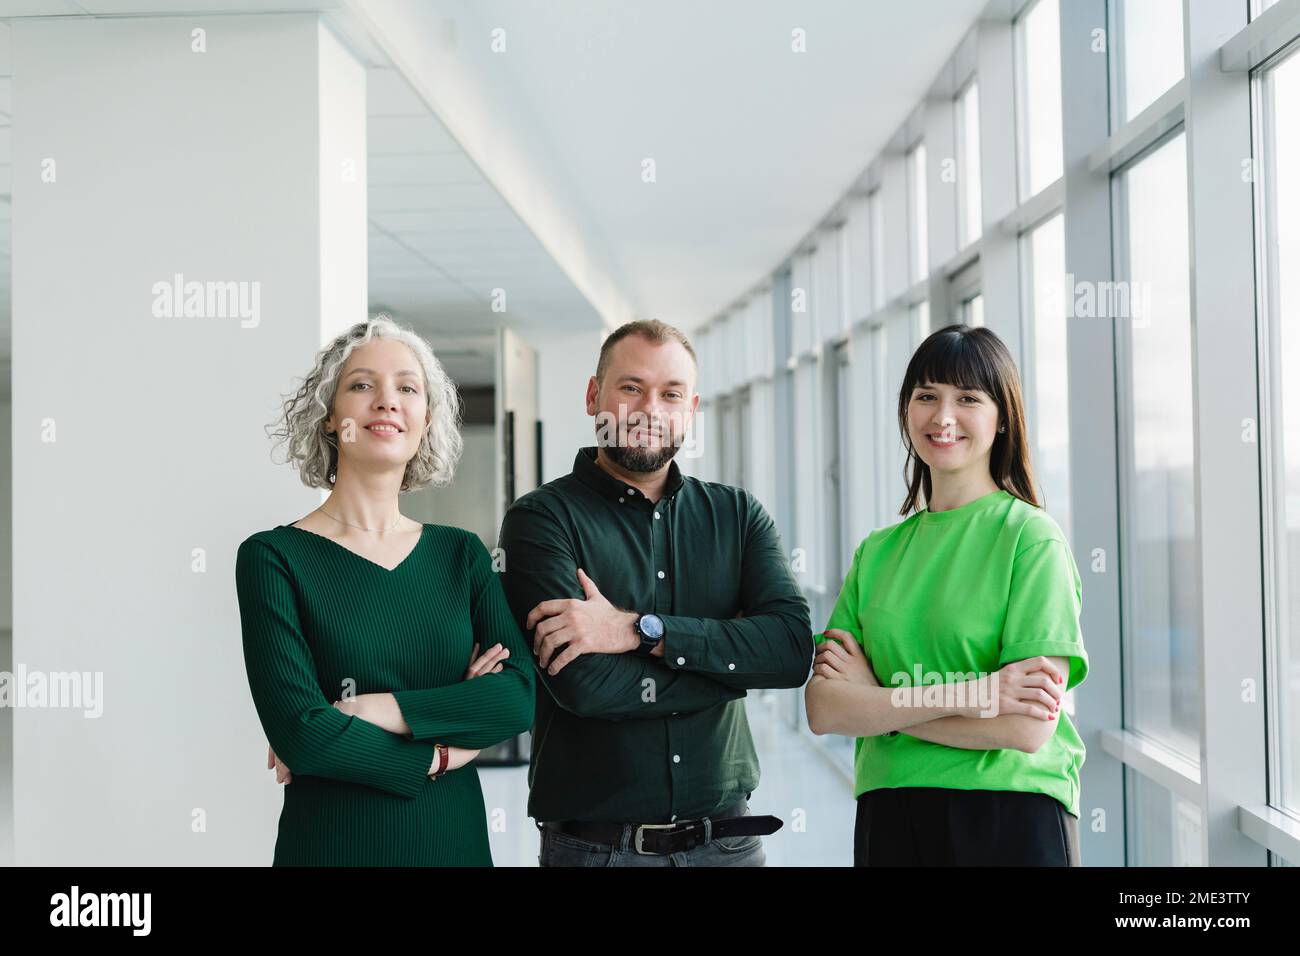 Porträt von drei selbstbewussten Geschäftsleuten in grüner Kleidung auf dem Büroboden Stockfoto